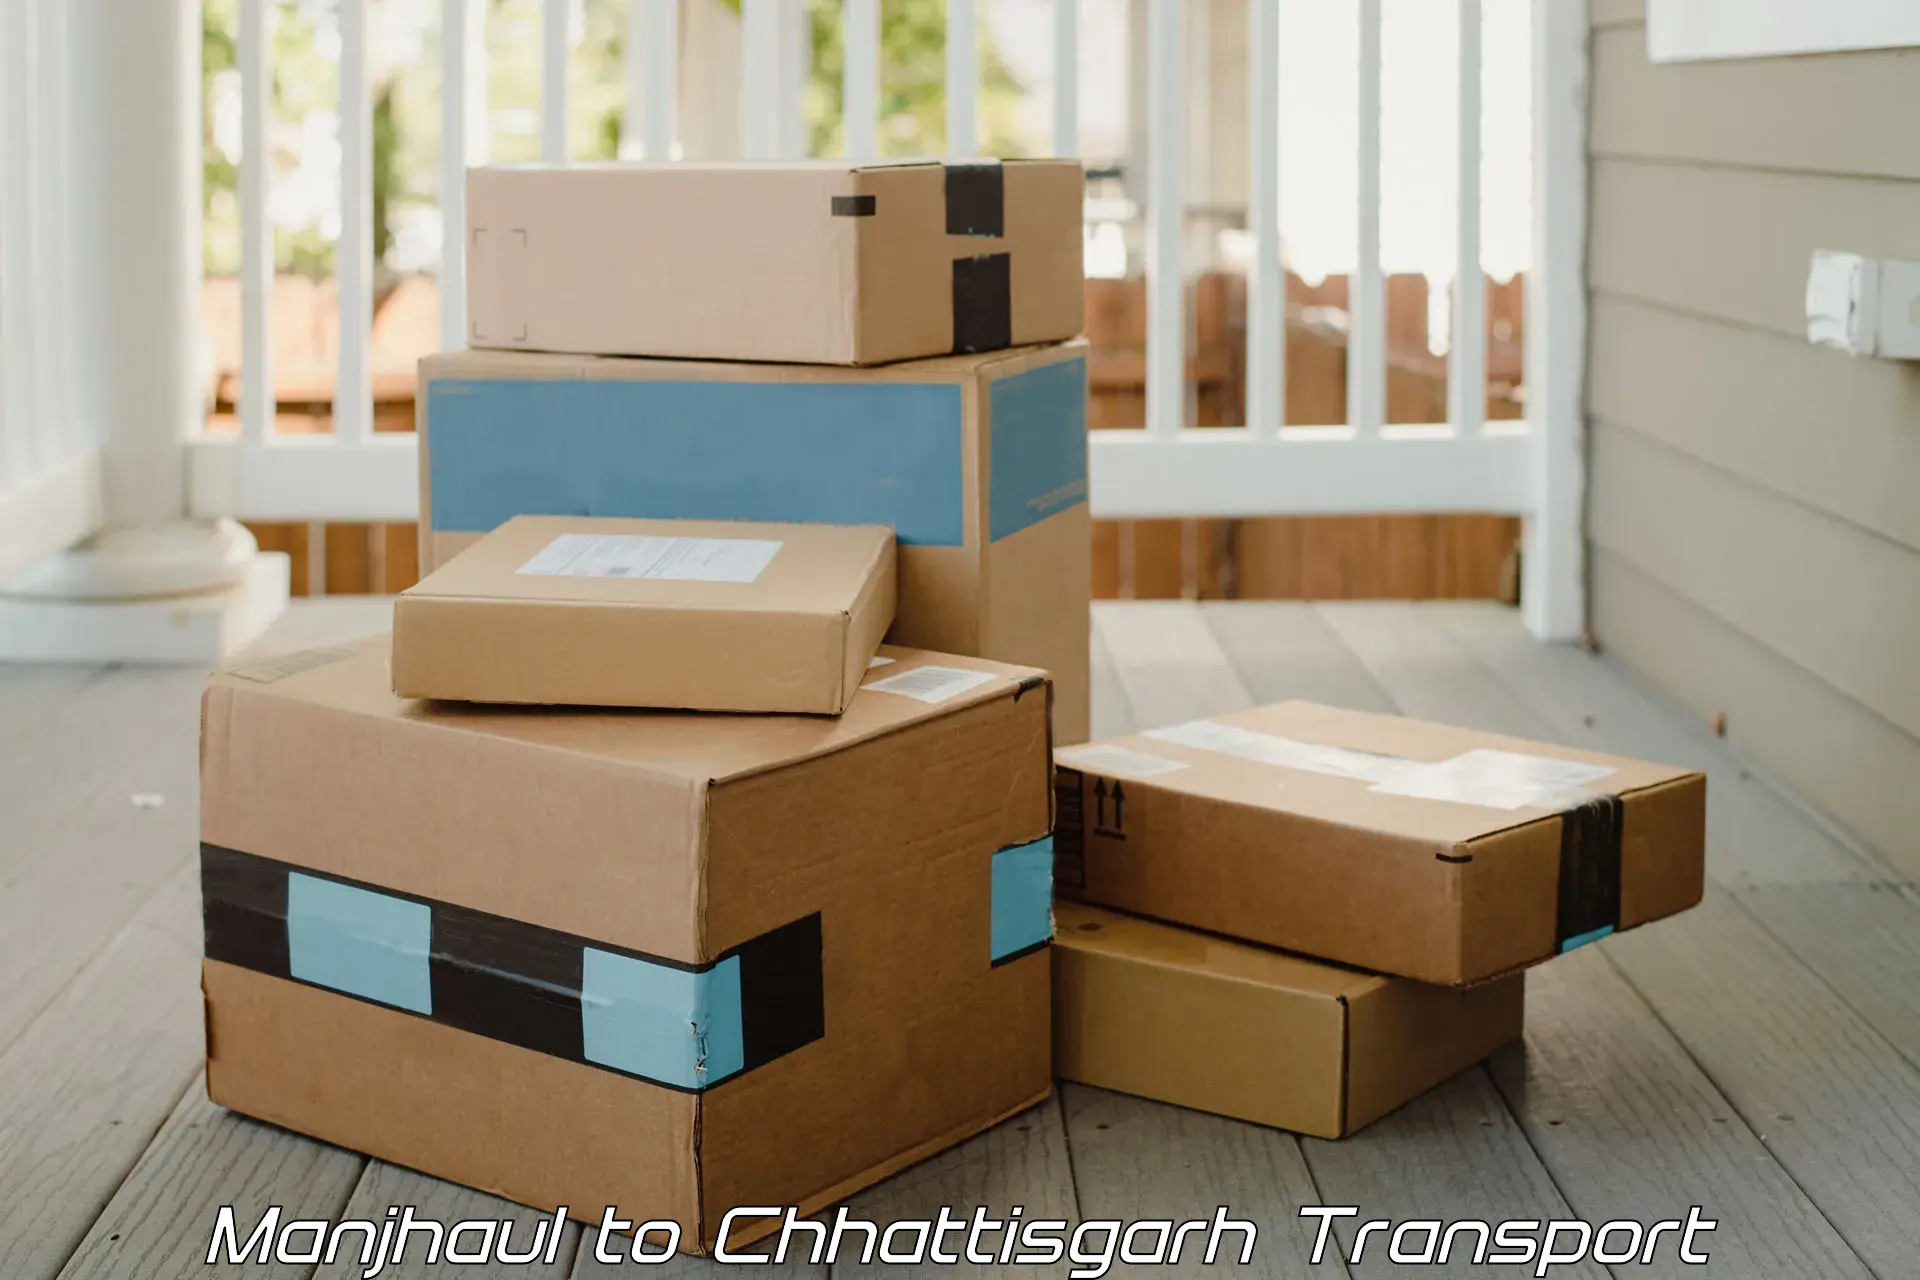 Cargo train transport services in Manjhaul to Chhattisgarh